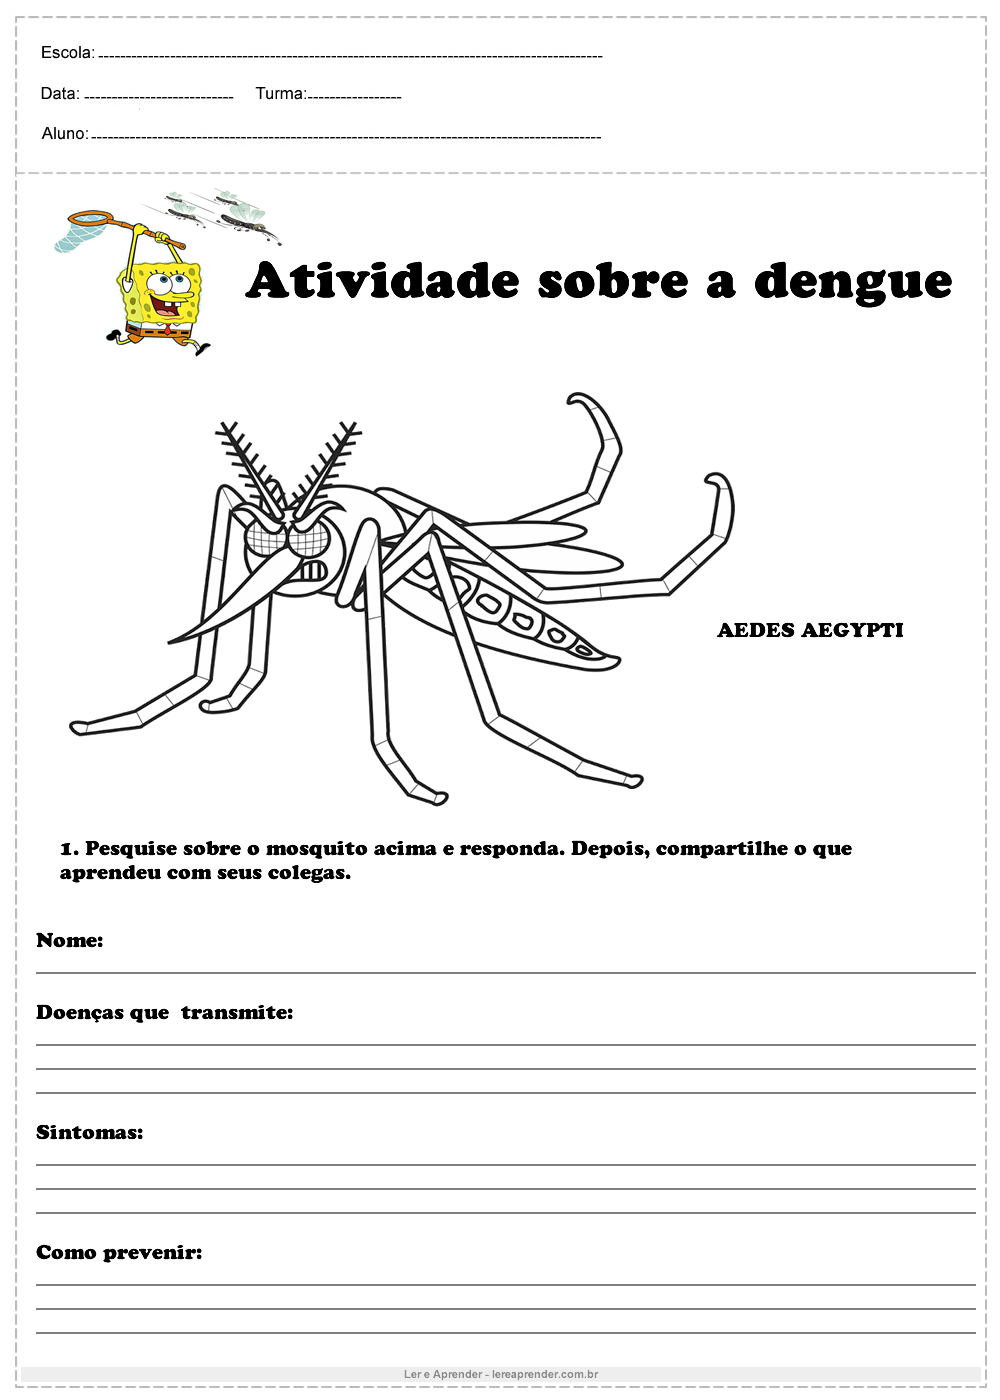 Atividade sobre a dengue responda